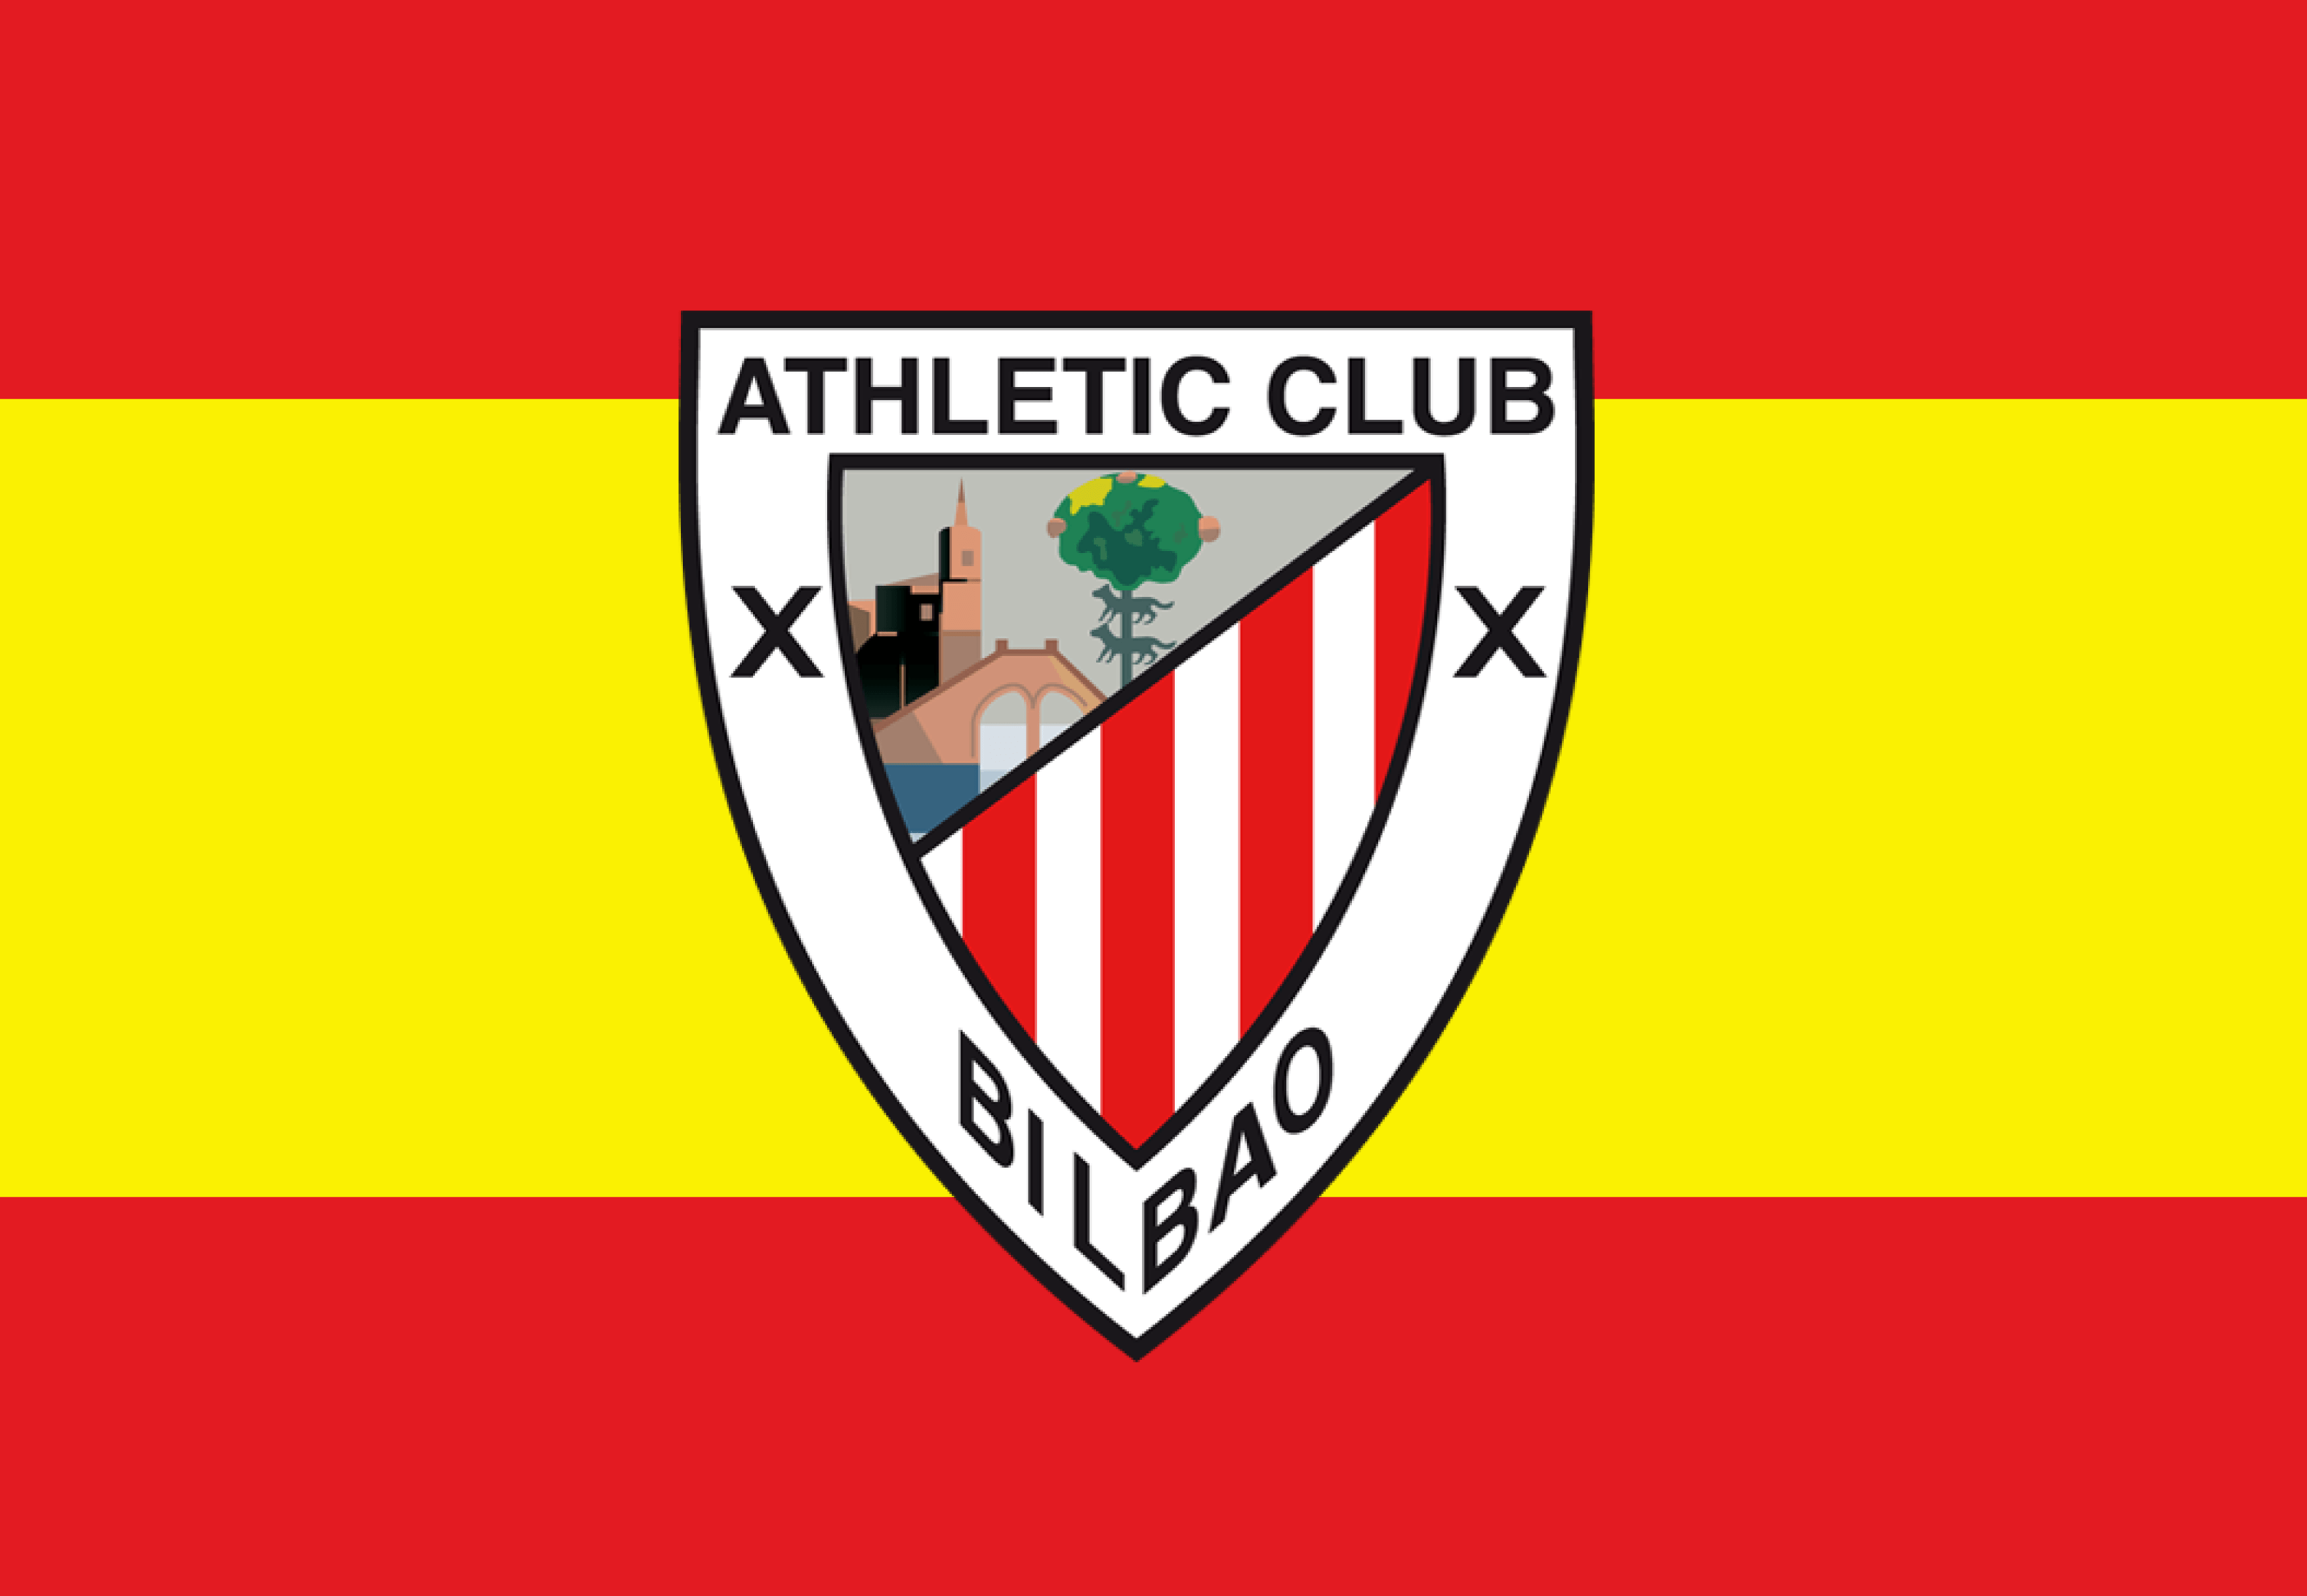 Athletic club